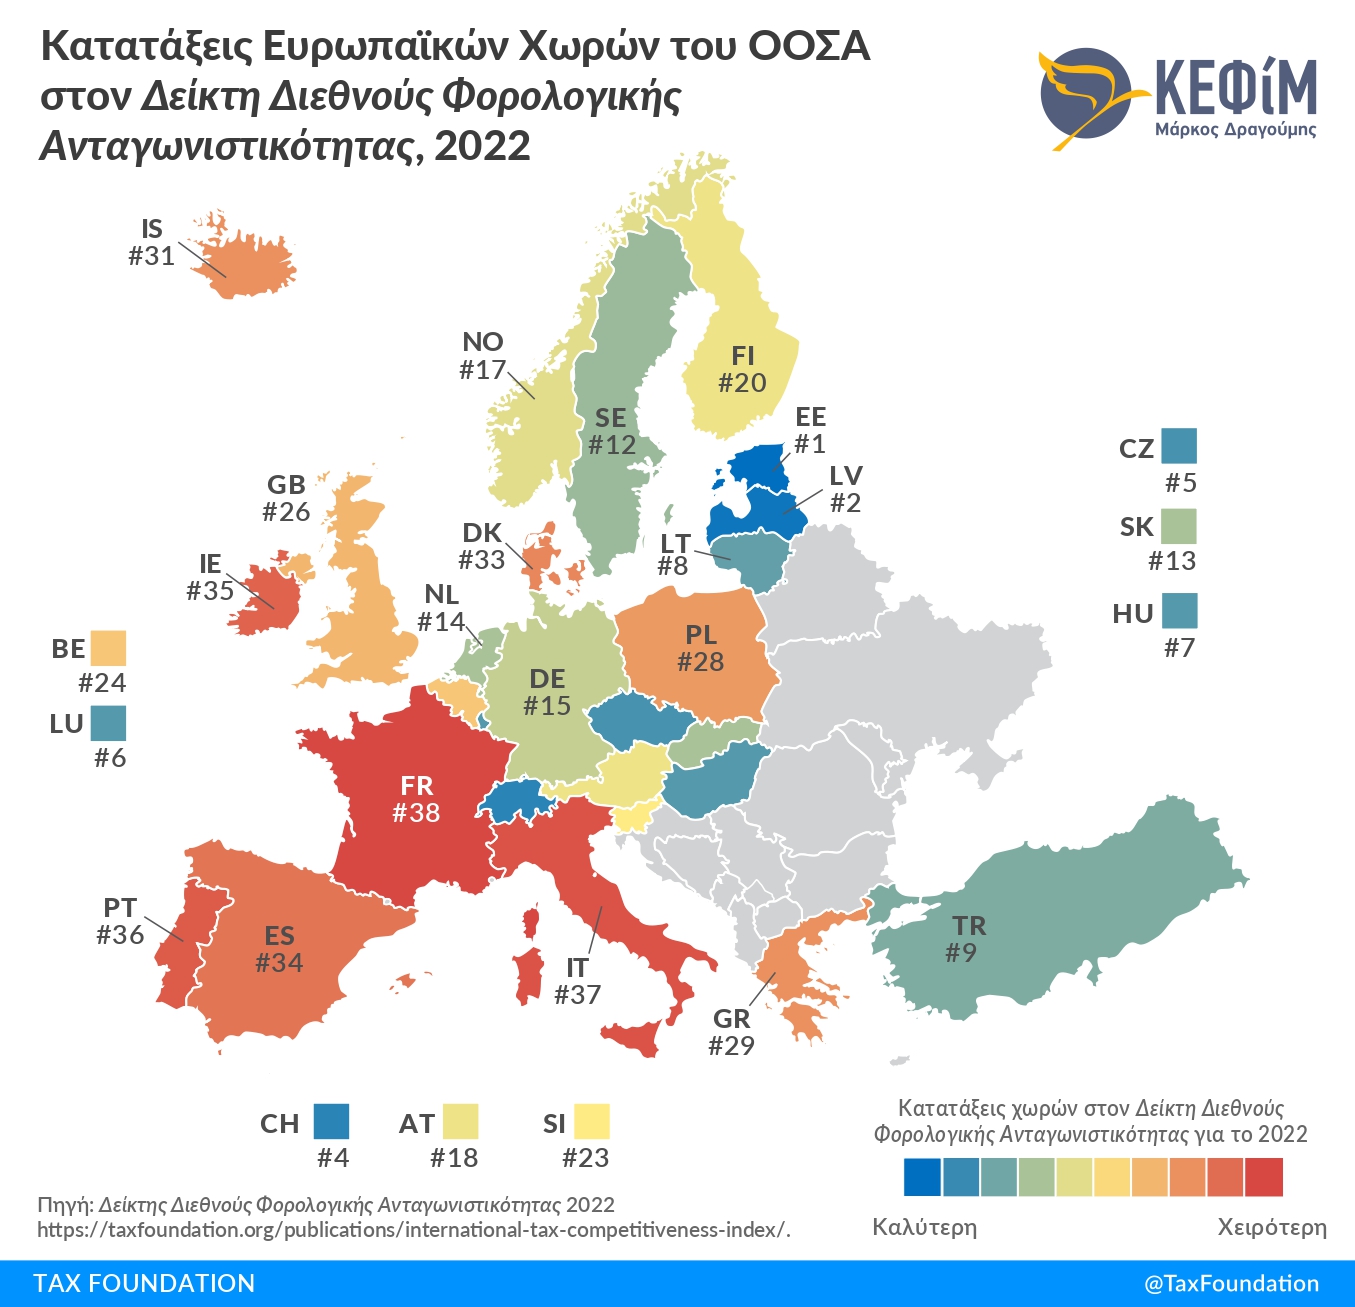 ΚΕΦίΜ: Βελτιώθηκε κατά 4 θέσεις η κατάταξη της Ελλάδας στον Δείκτη Διεθνούς Φορολογικής Ανταγωνιστικότητας